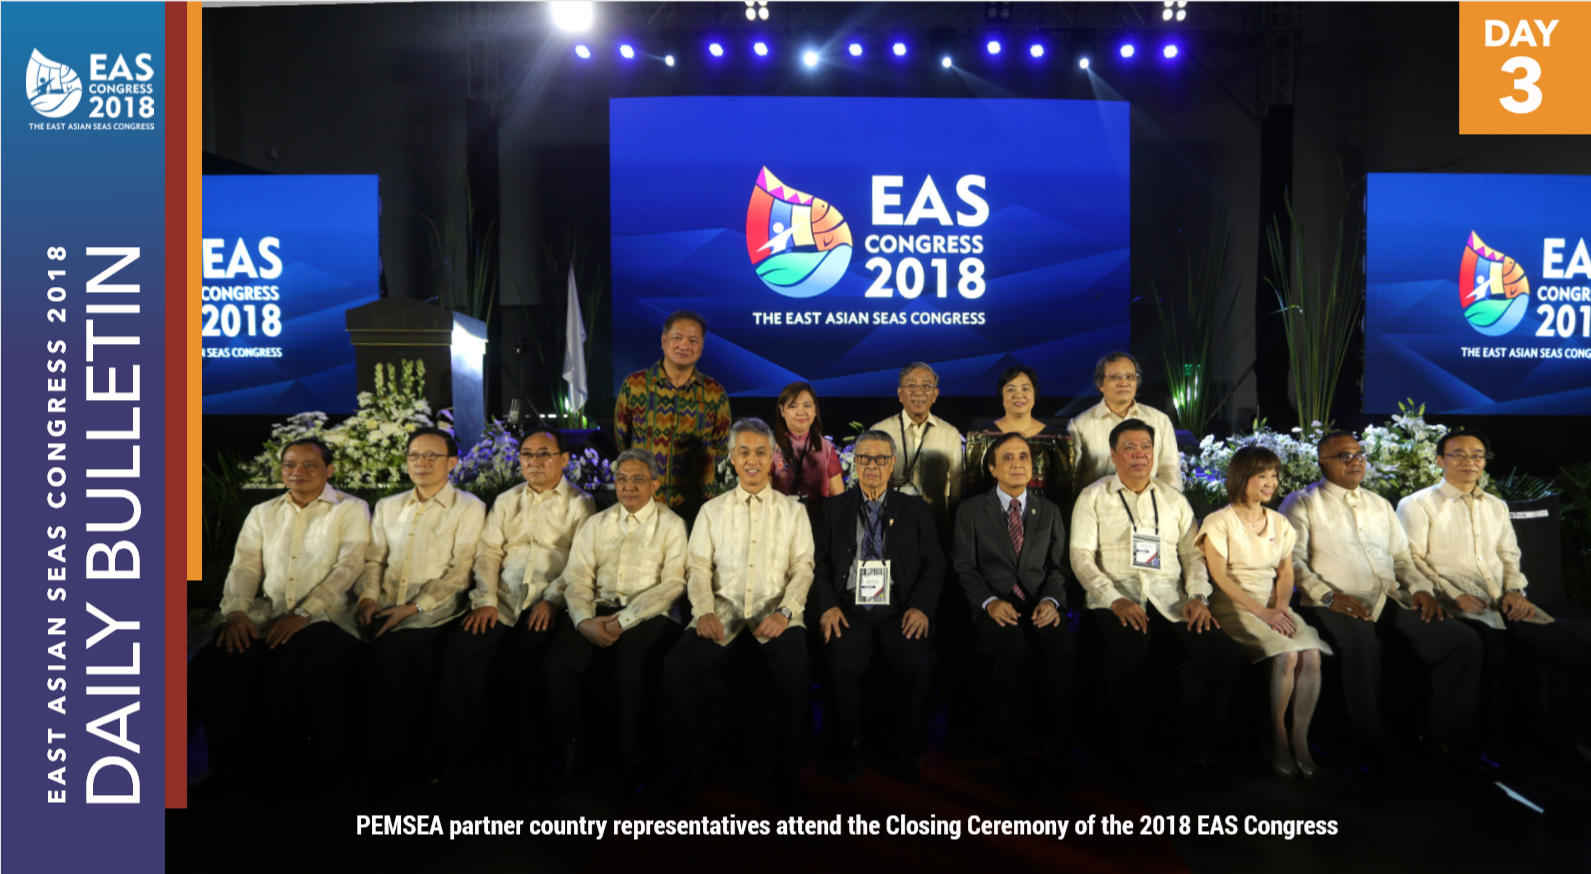 EAS Congress 2018 Daily Bulletin Day 3